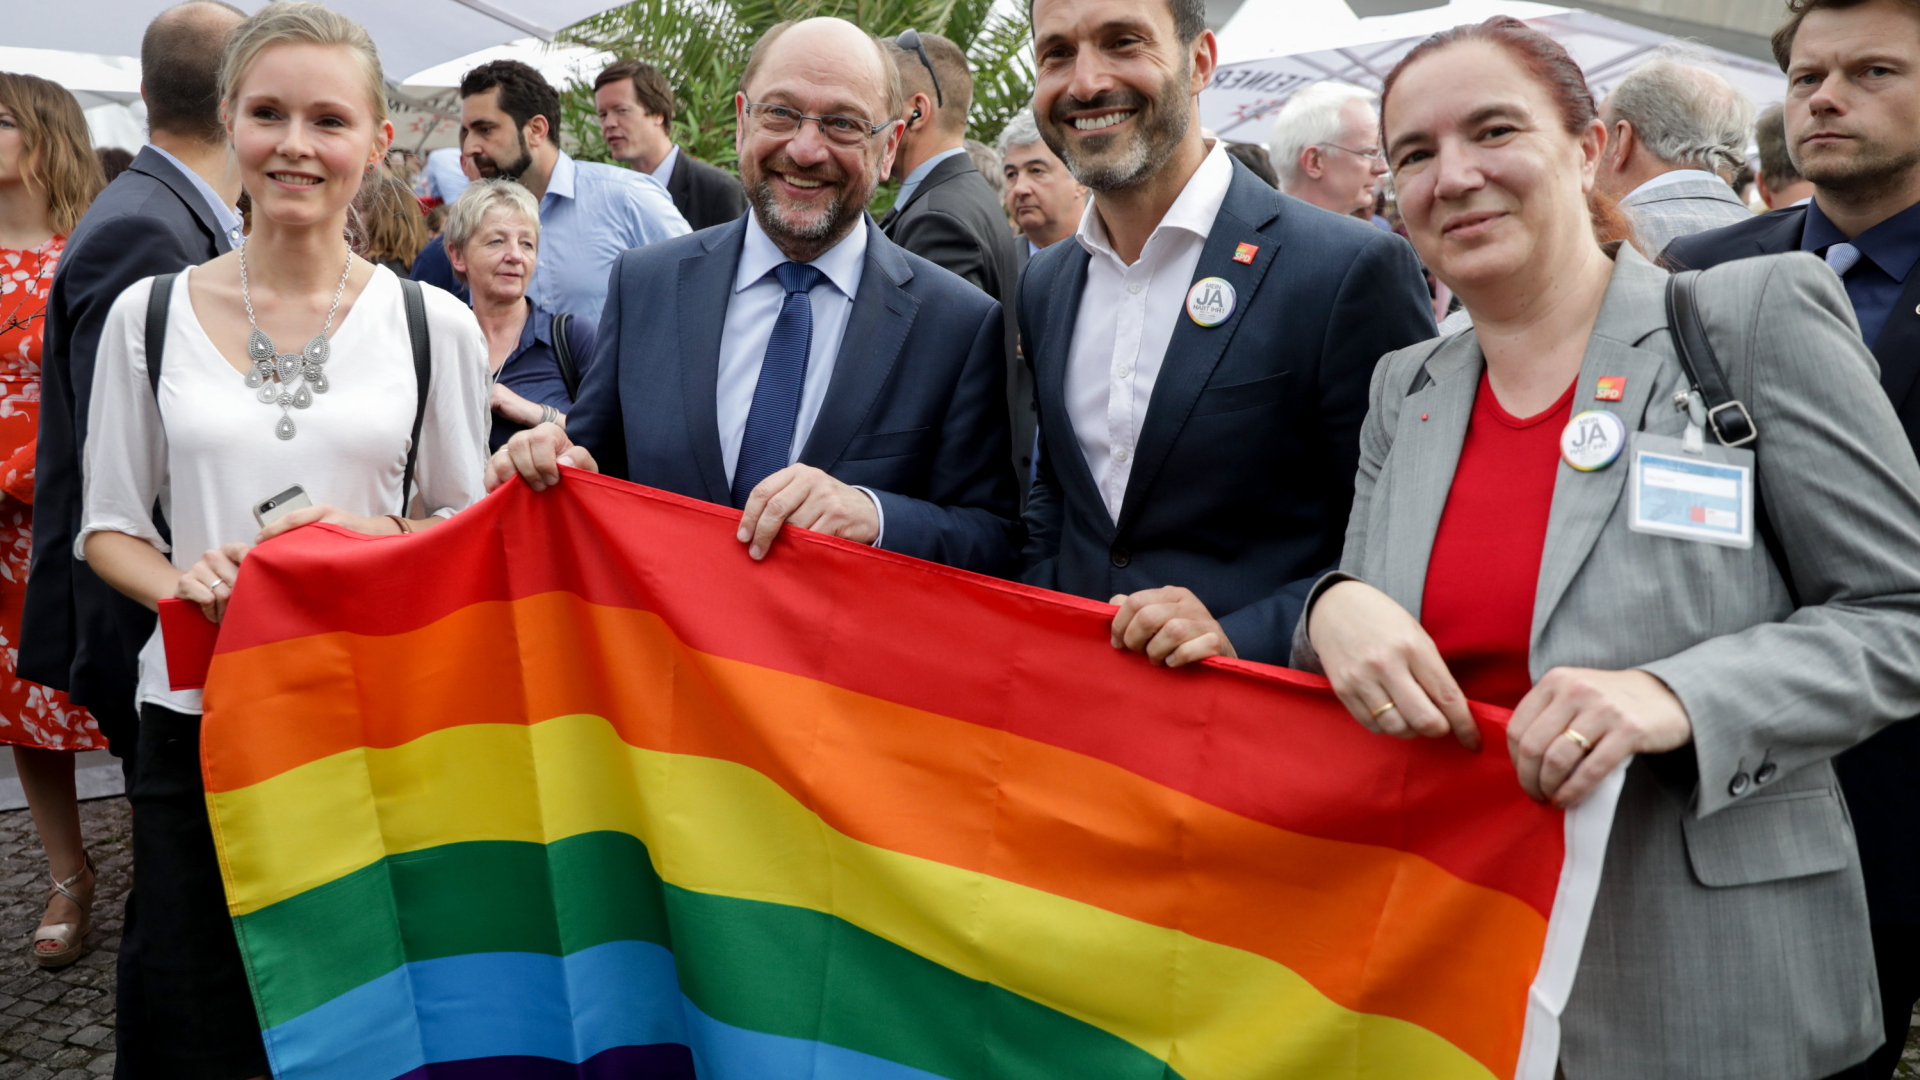 SPD-Kanzlerkandidat Martin Schulz mit der Regenbogenfahne | dpa